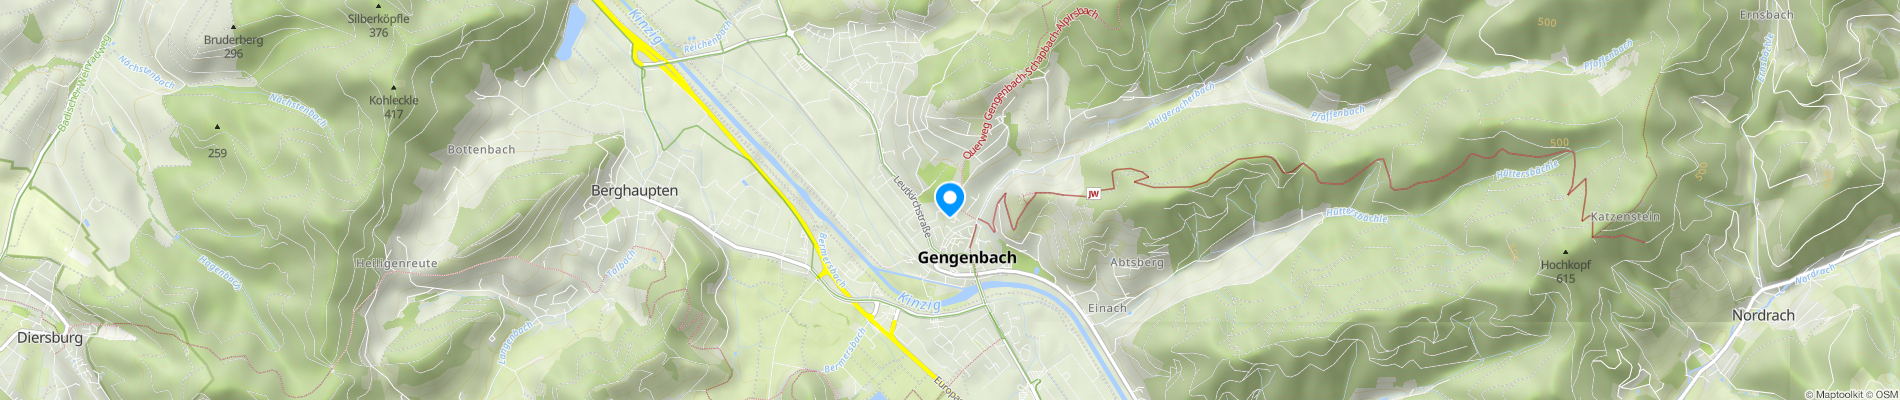 Stadtkapelle Gengenbach / Urheber: